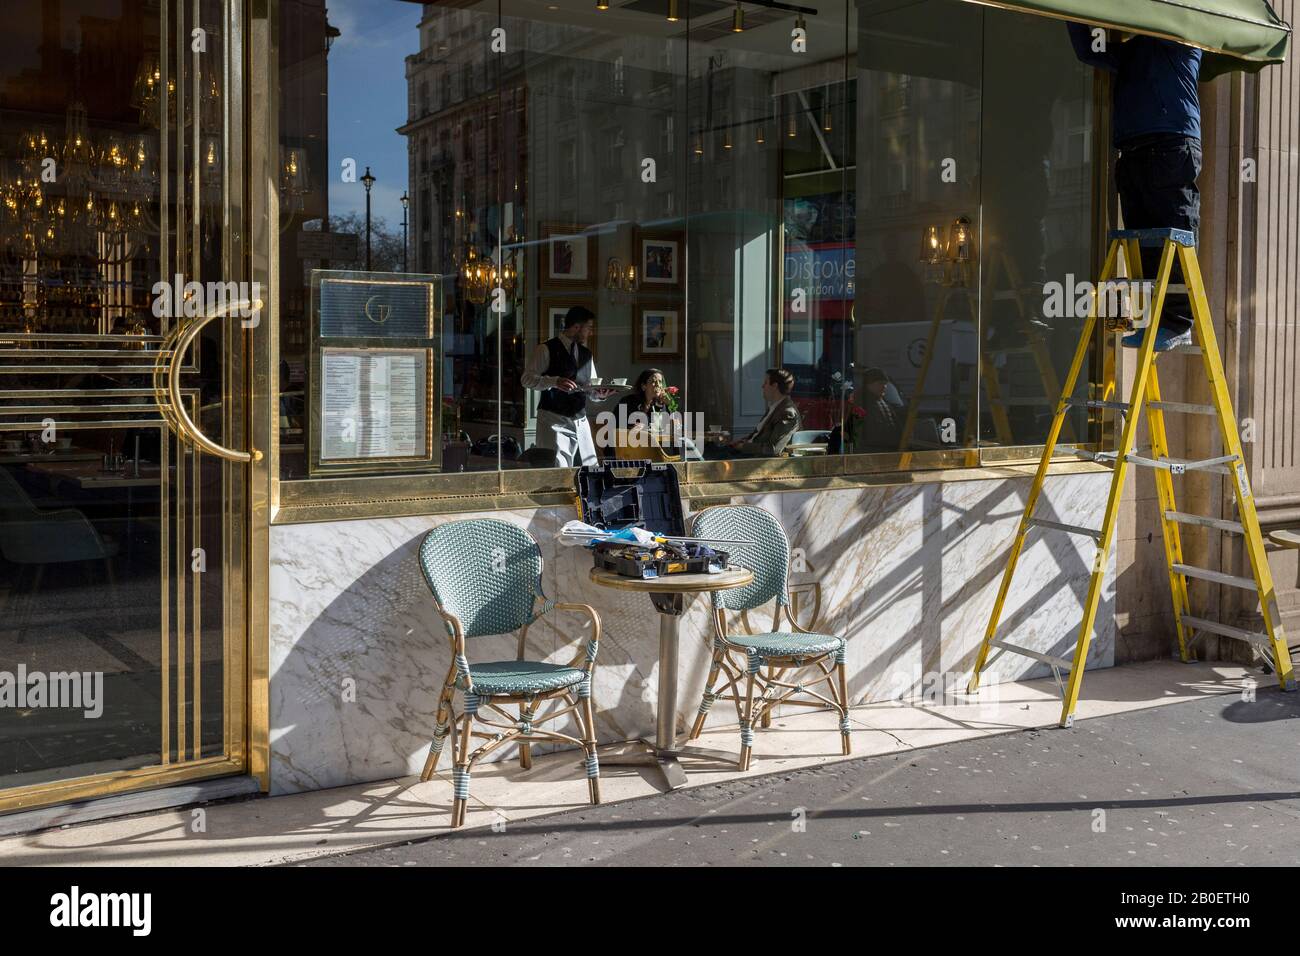 Mientras que un camarero sirve a los clientes sentados a la luz del sol del invierno, un obrero está parado en las escaleras de vapor para reparar el toldo del Café Grand by Concerto on en la esquina de Dover Street y Piccadilly, el 18 de febrero de 2020, en Londres, Inglaterra. Foto de stock